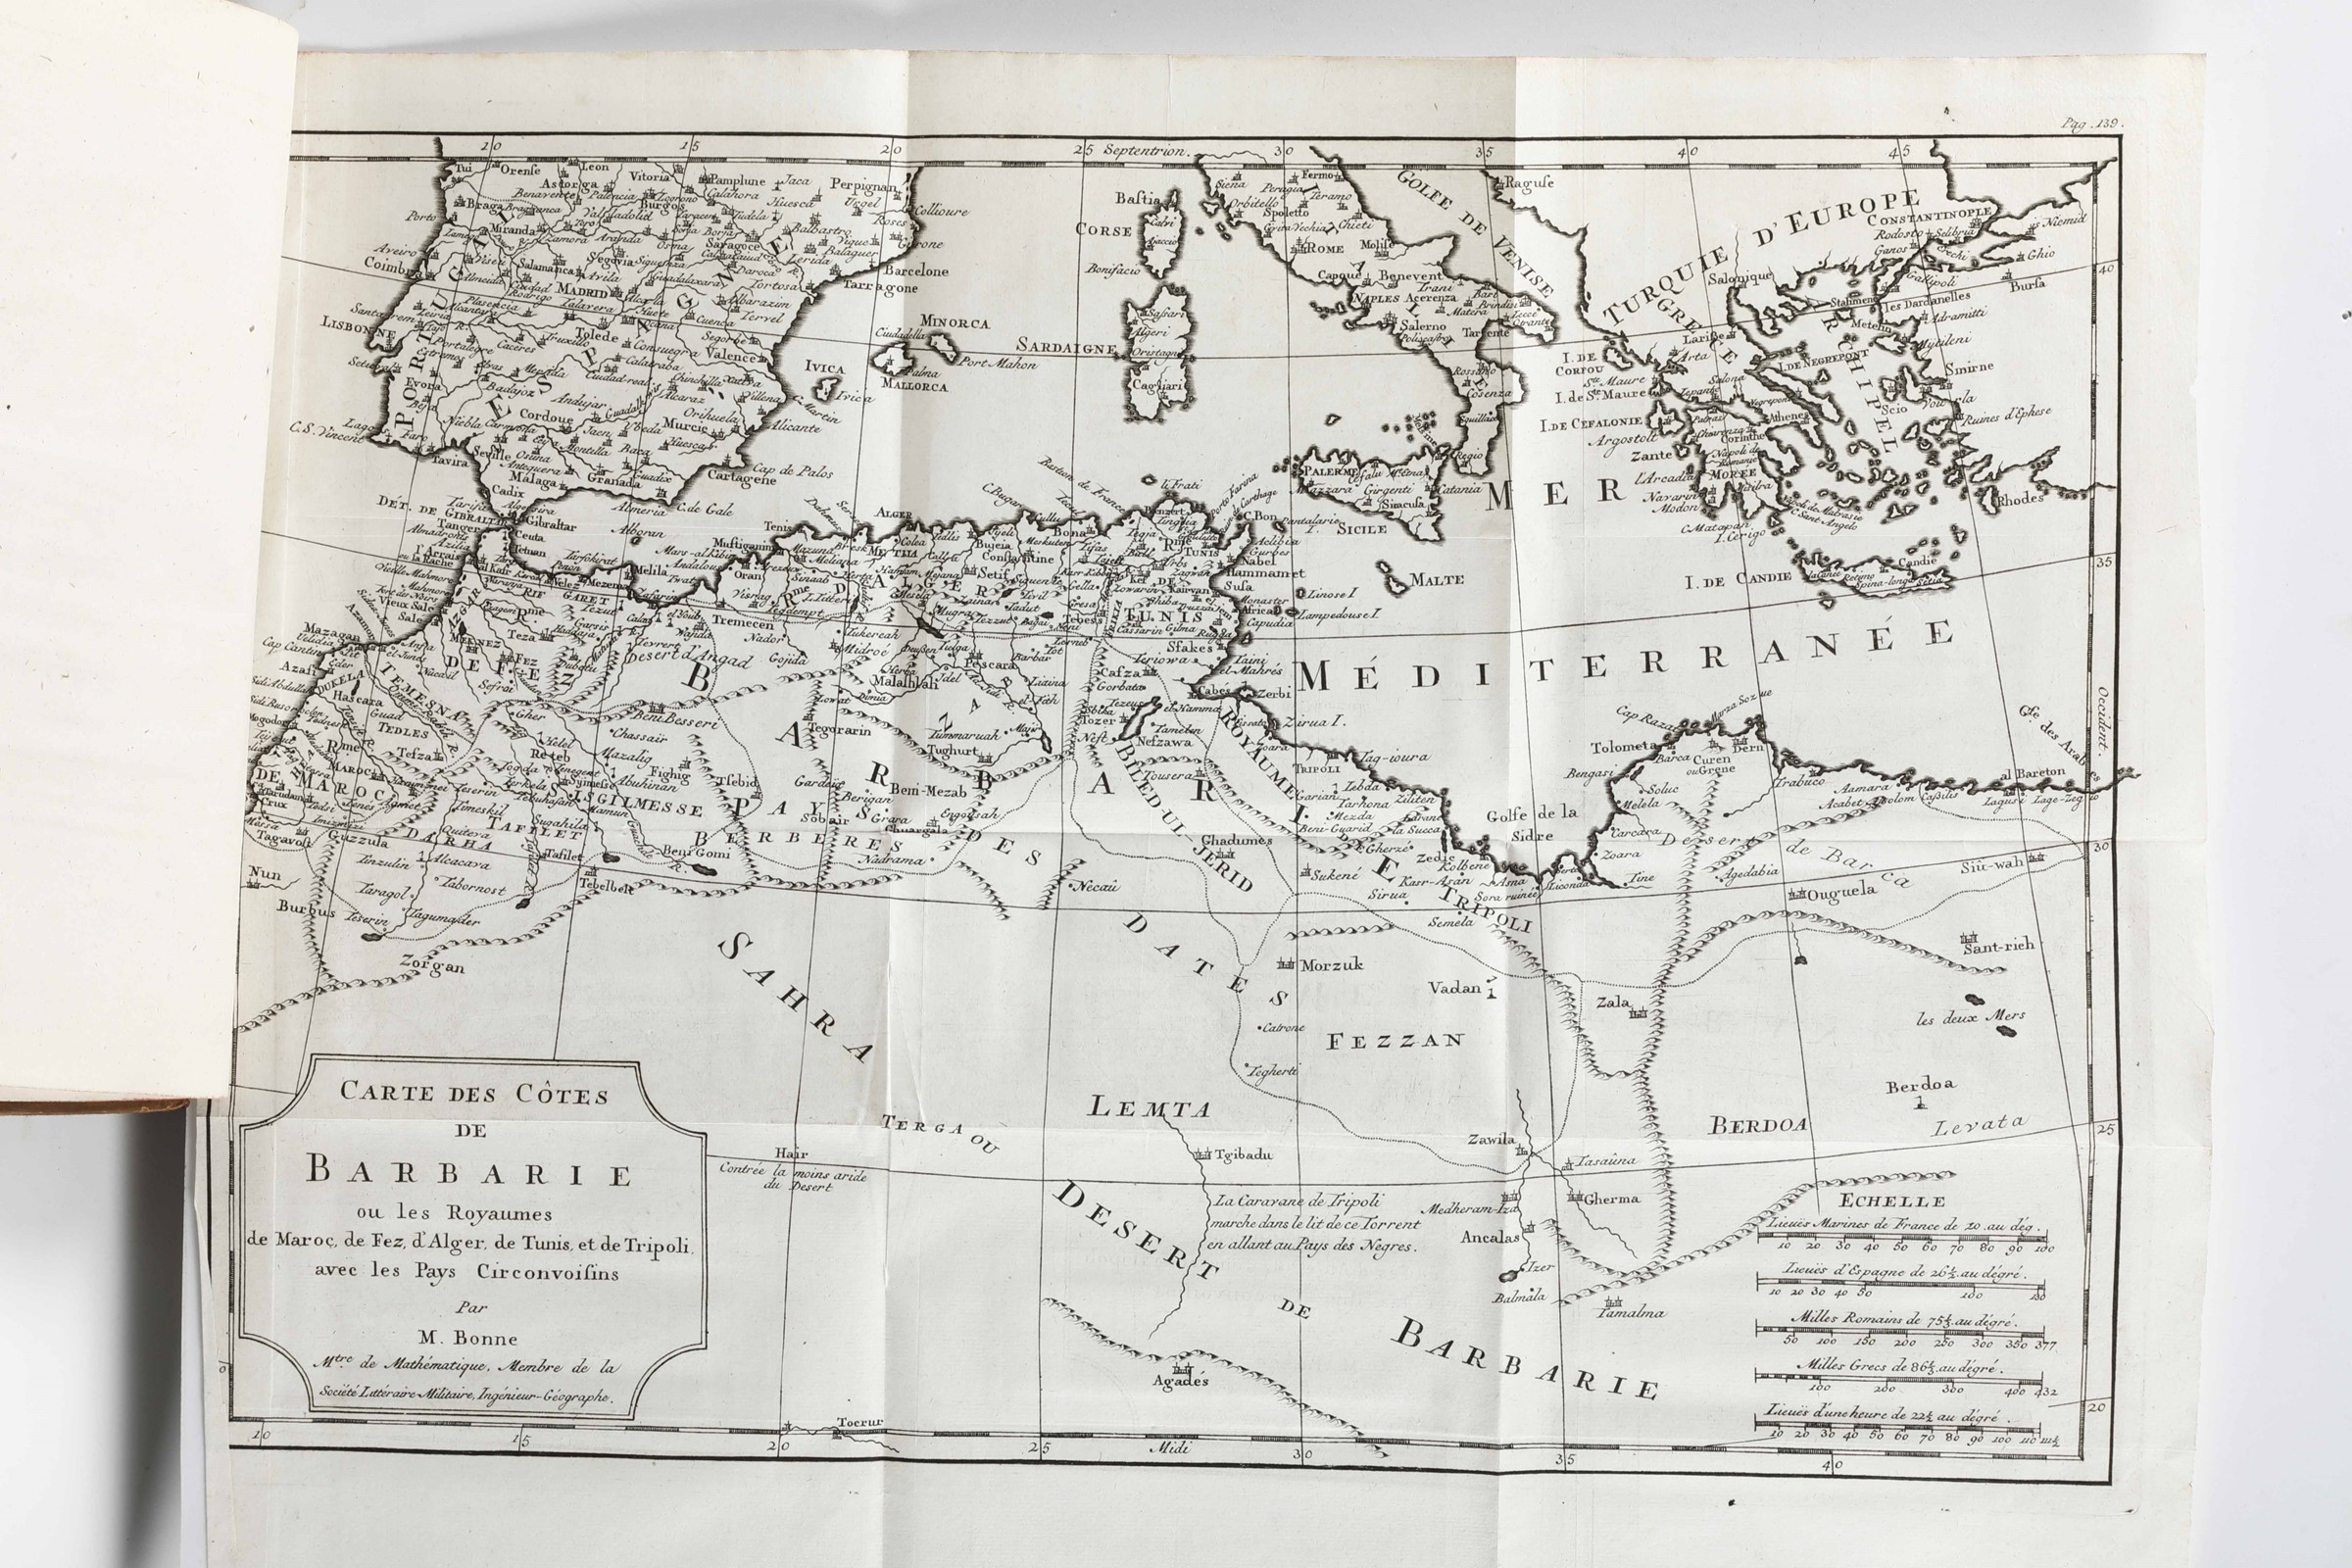 Janver, Bellin, Bonne, e altri cartografi, Atlante miscellaneo di carte [...] - Image 2 of 4